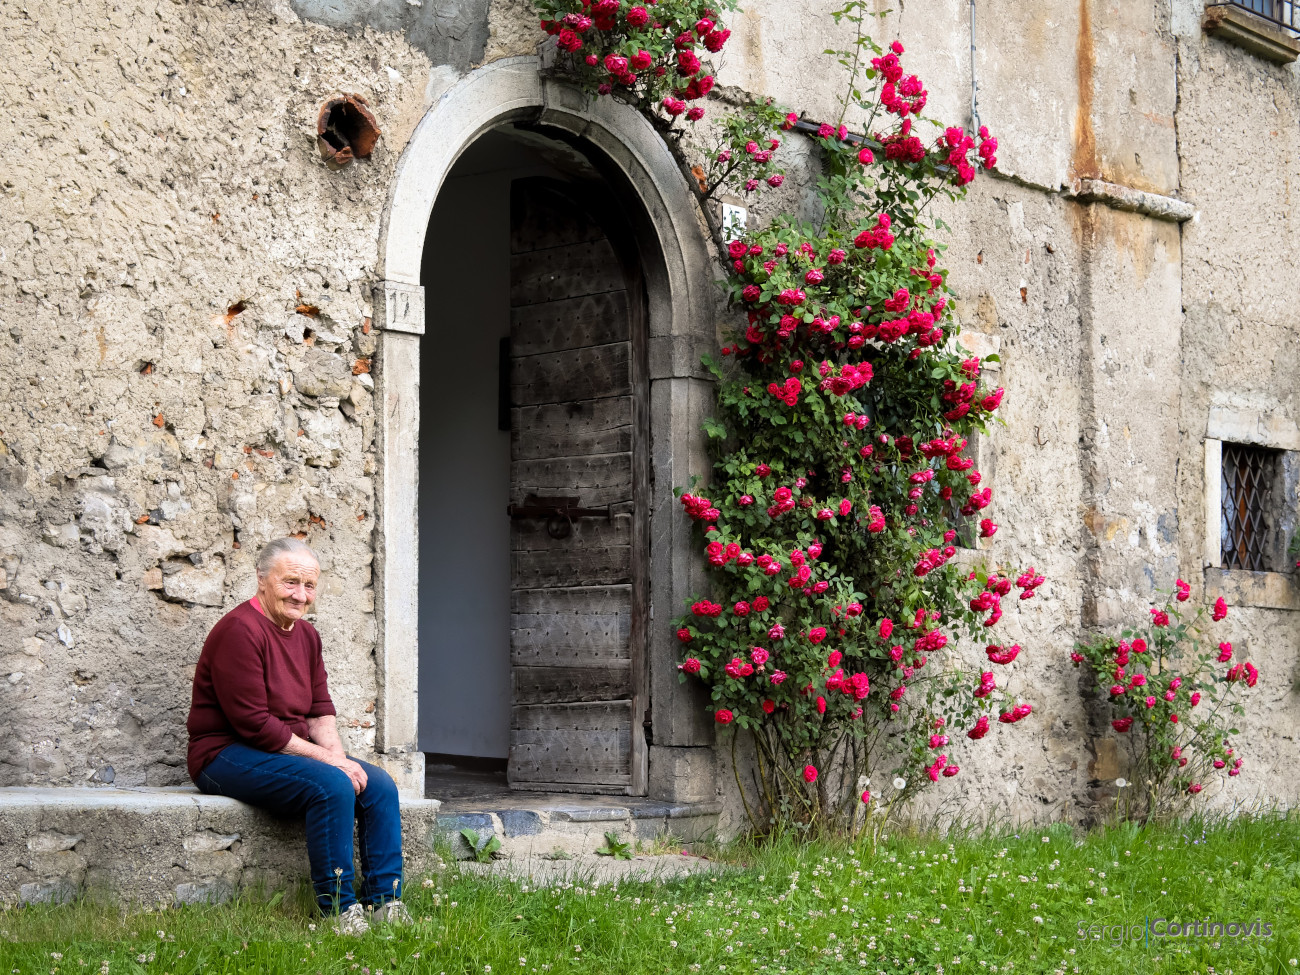 Signora anziana su una panchina con un portone e delle rose rosse sullo sfondo